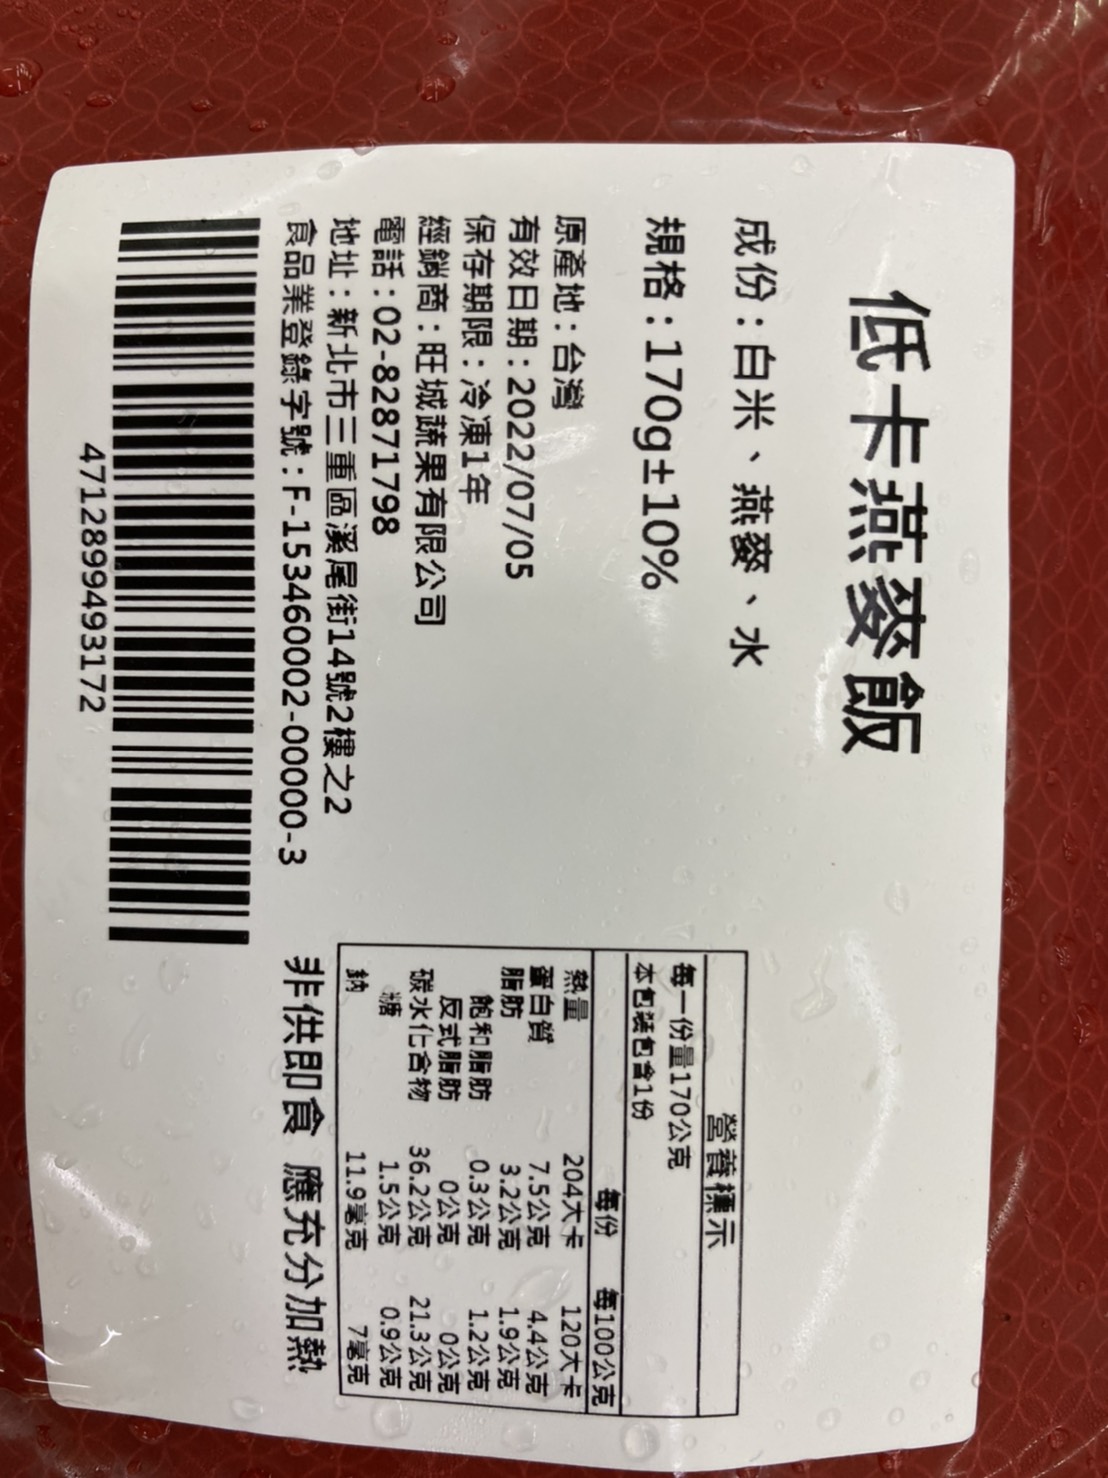       【減醣聖品】養生五穀/黎麥/糙米/燕麥/小米飯(30包_170g/